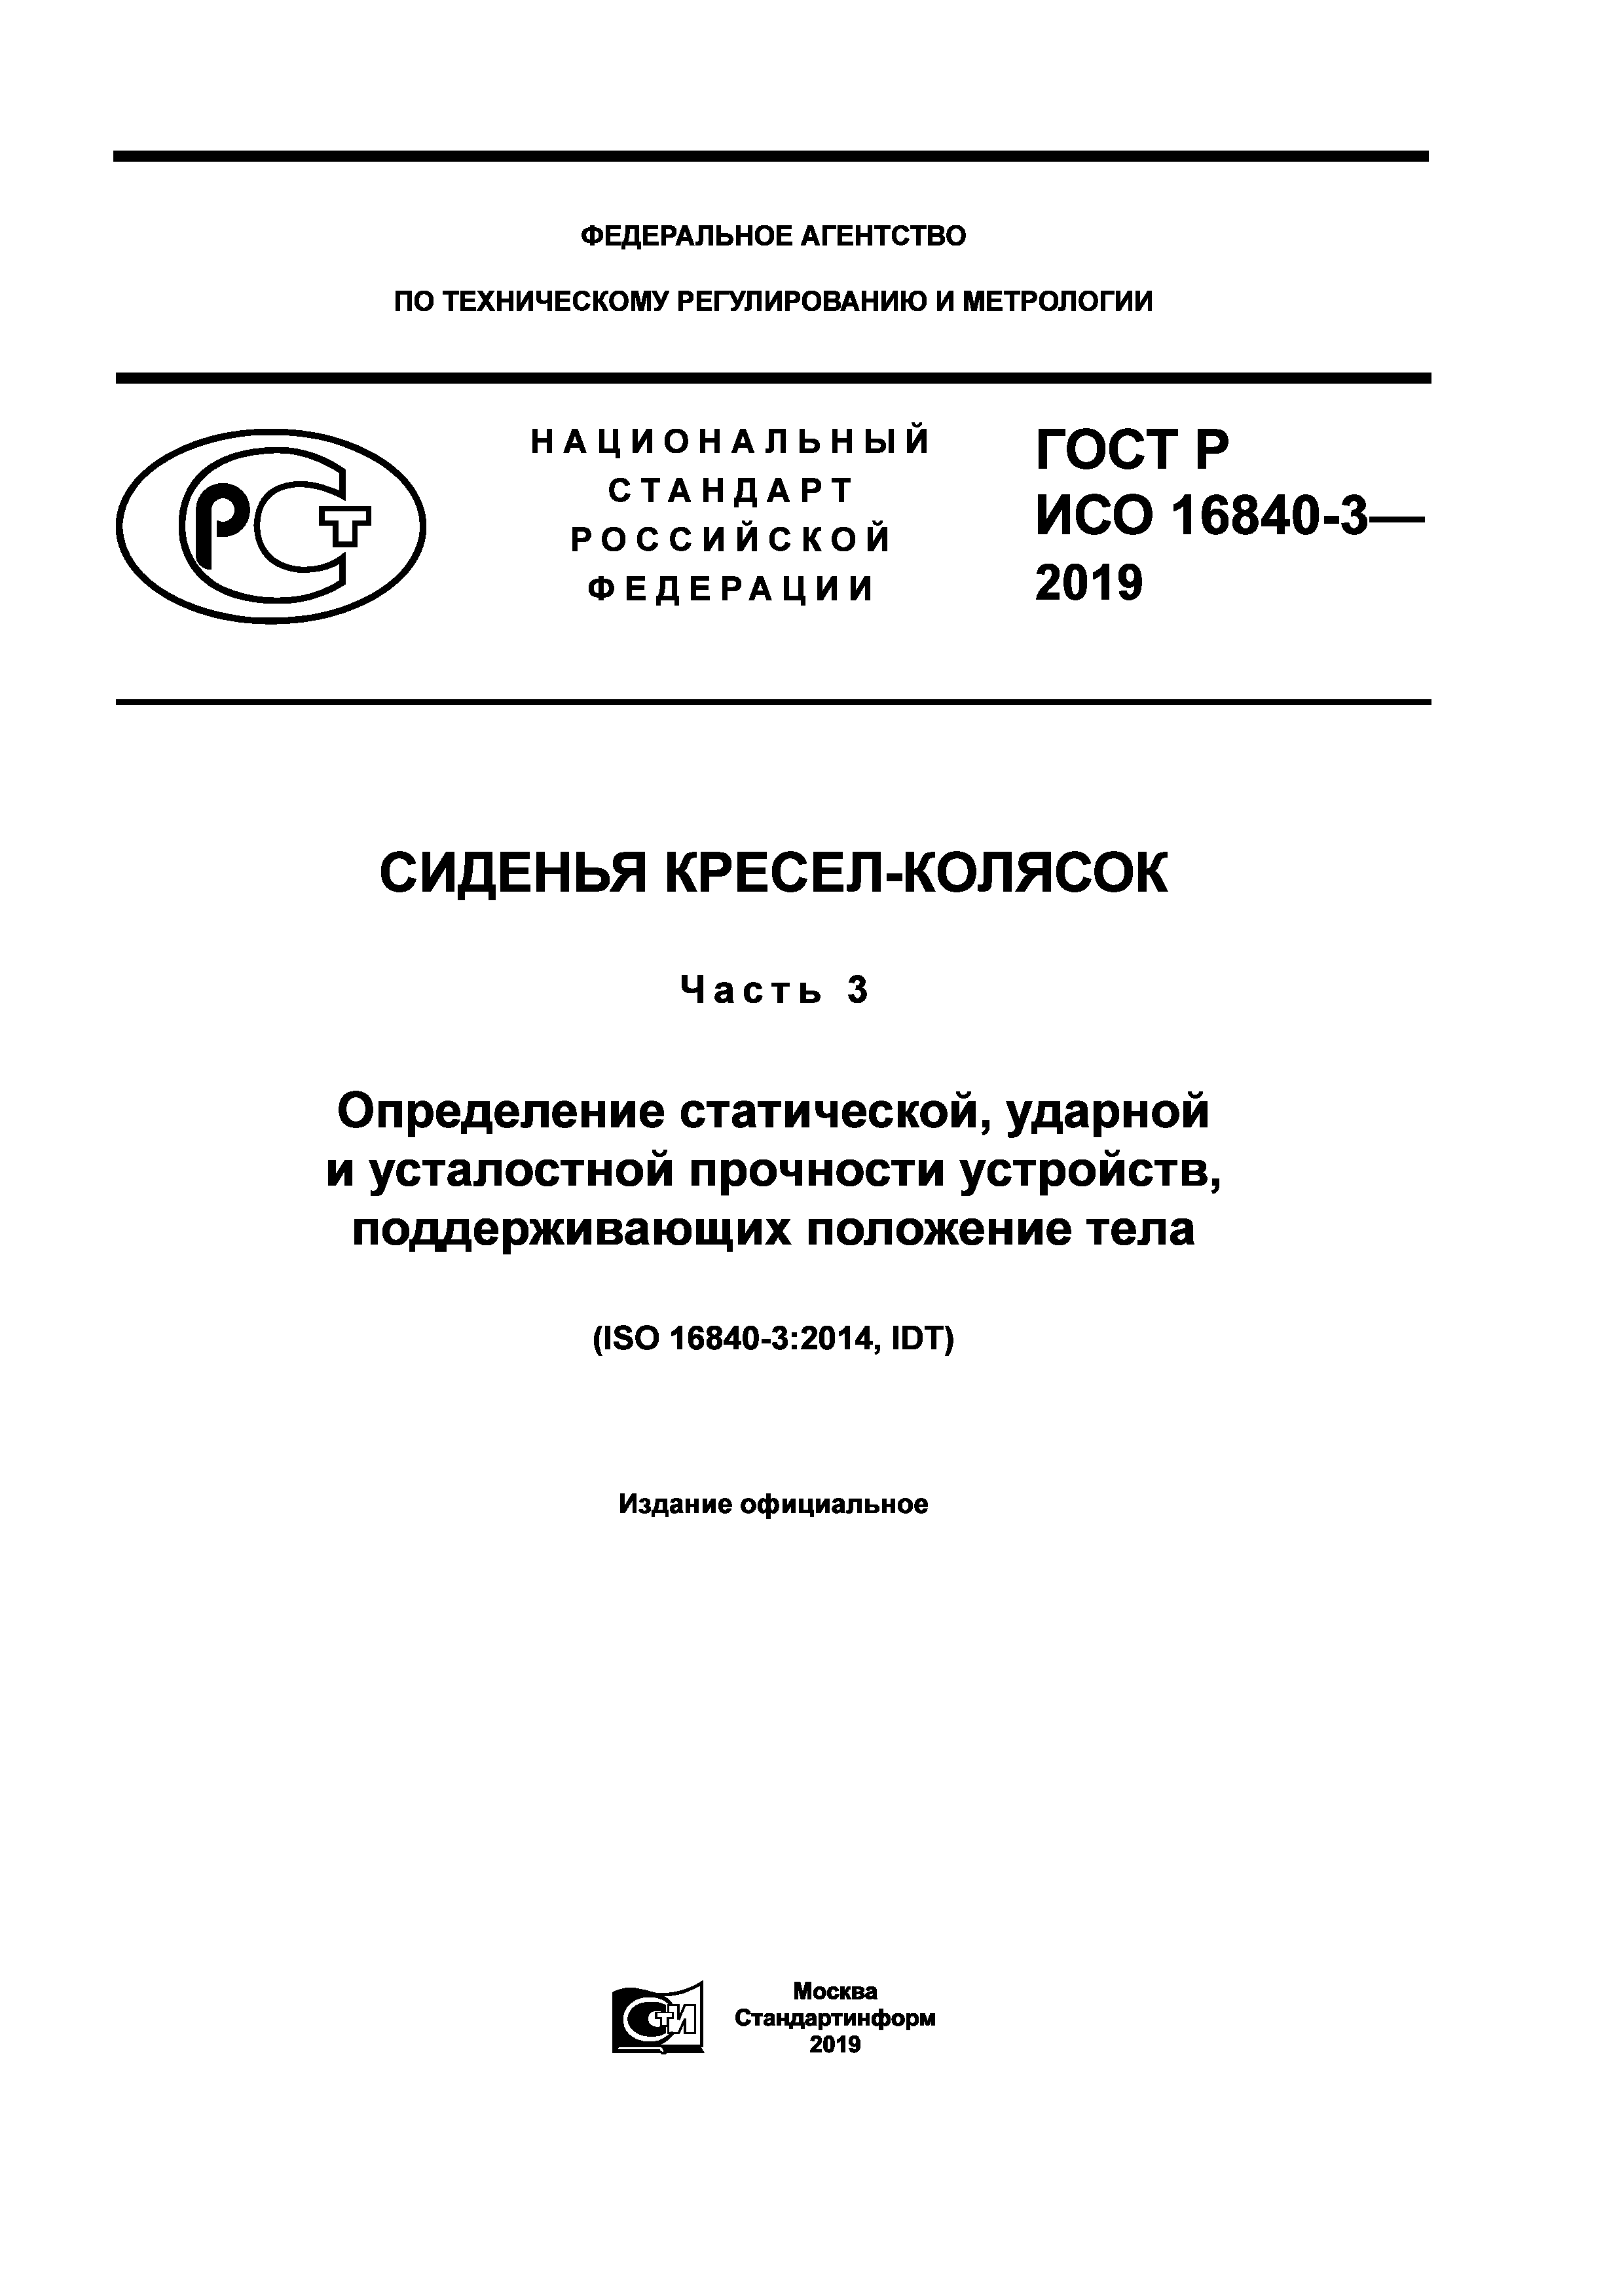 ГОСТ Р ИСО 16840-3-2019